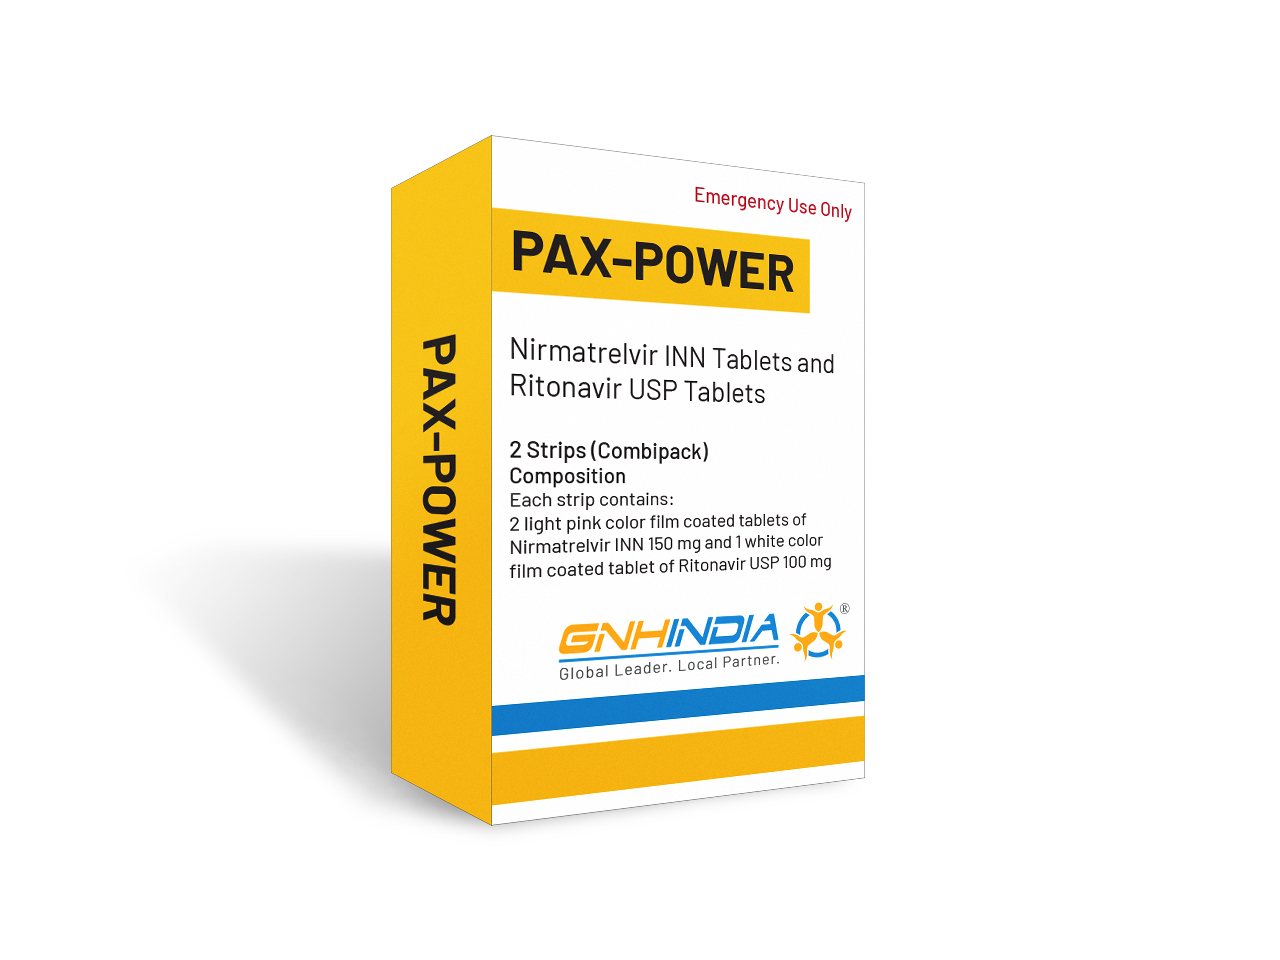 Pax-Power - Nirmatrelvir INN + Ritonavir USP